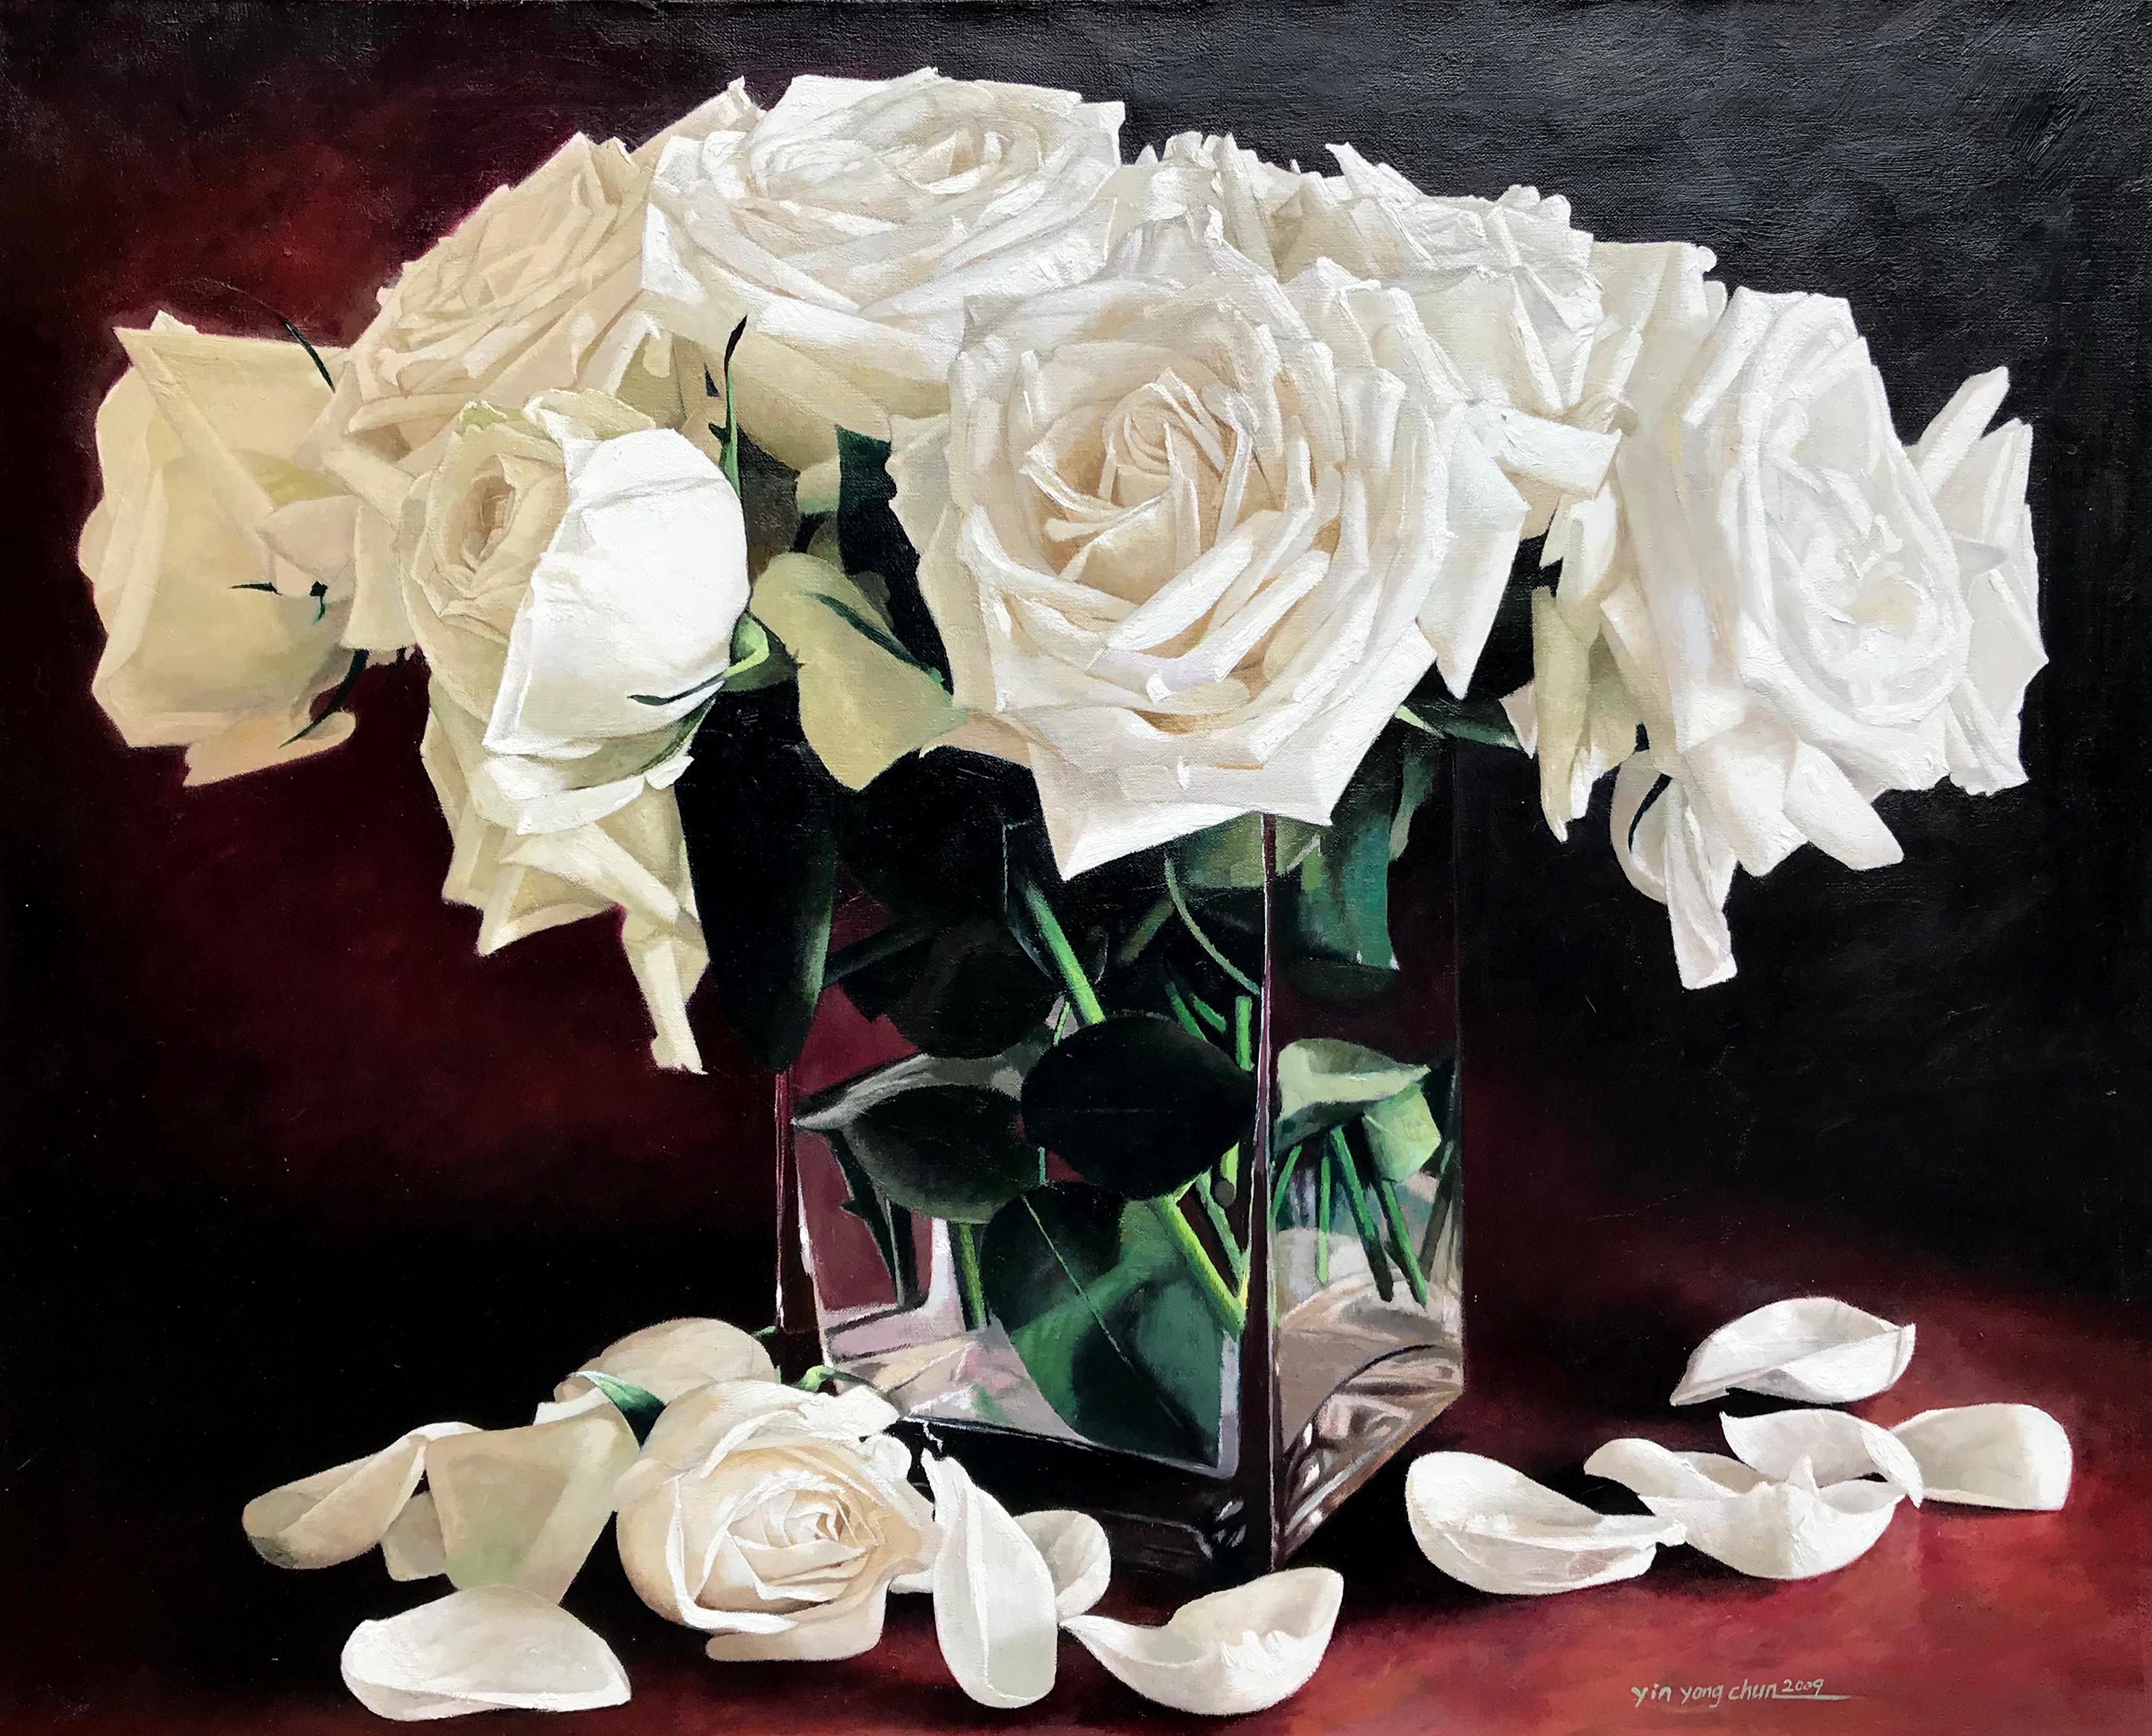 Cette nature morte florale, "Roses blanches", de l'artiste Yin Yong Chun  est une peinture à l'huile sur toile 24x30 représentant un bouquet de roses blanches dans un vase en verre avec des pétales blancs tombés sur la table. Le fond est d'un